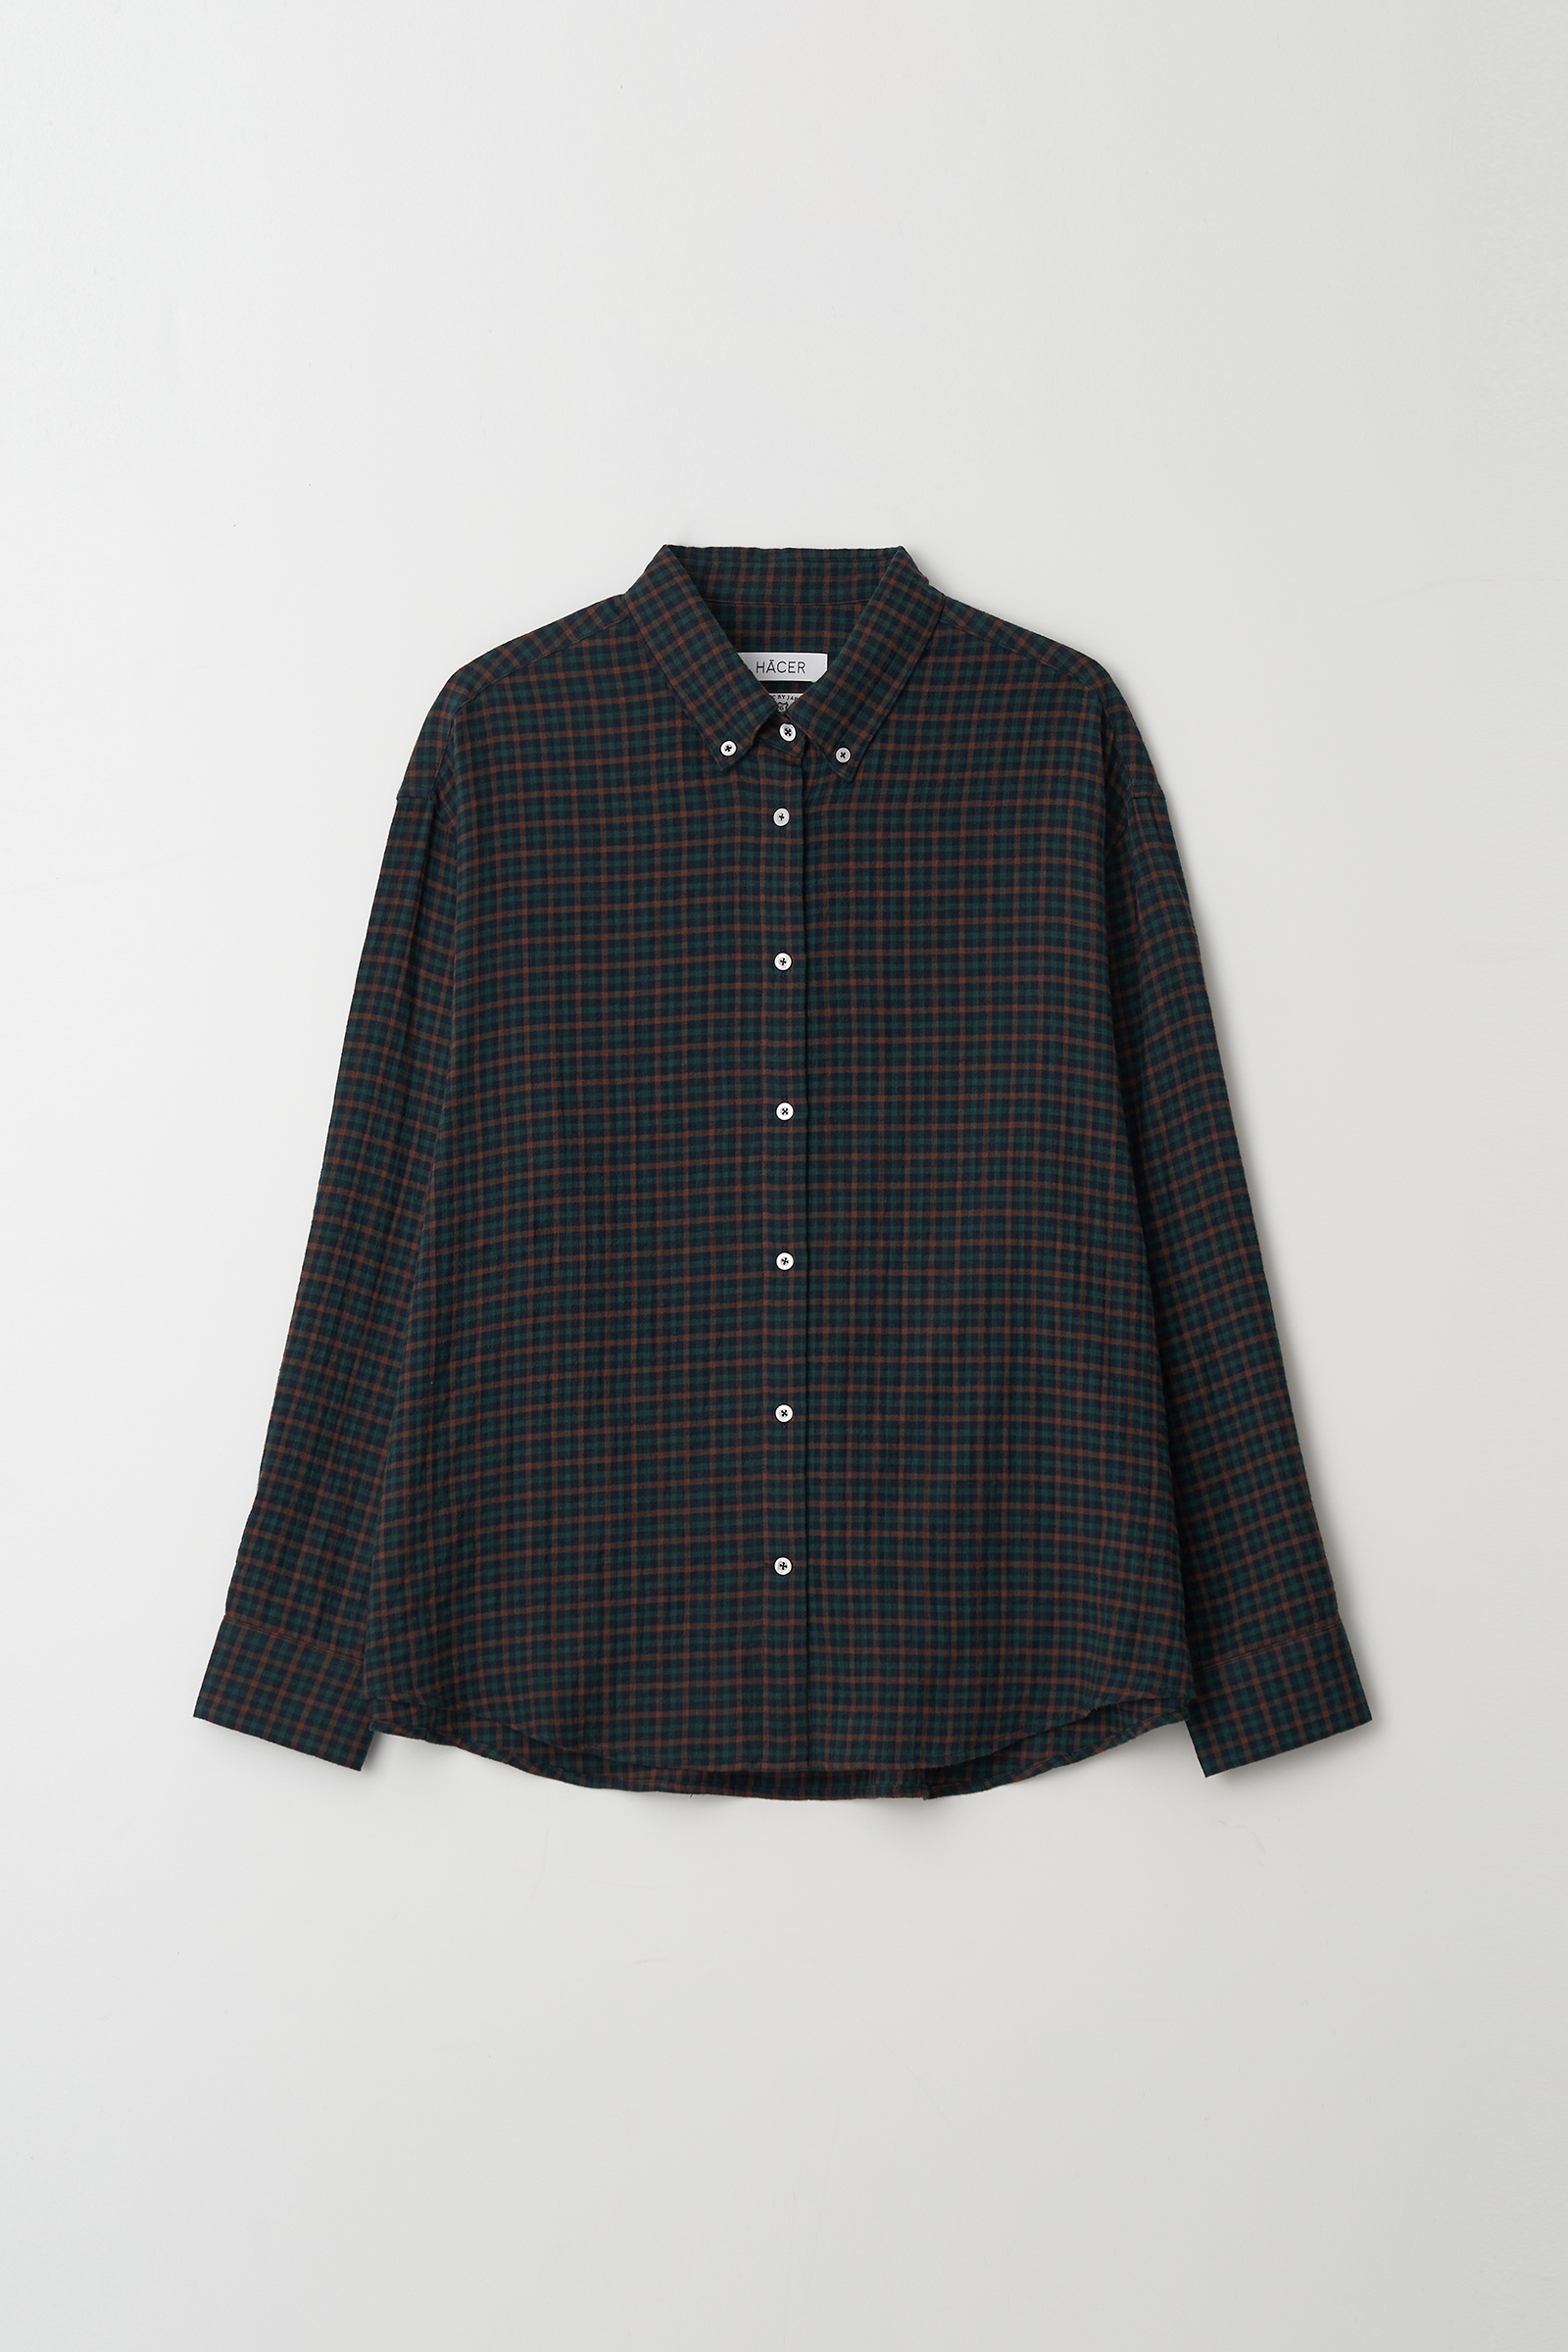 [2nd] Check Shirt (Fabric by Kuwamura)